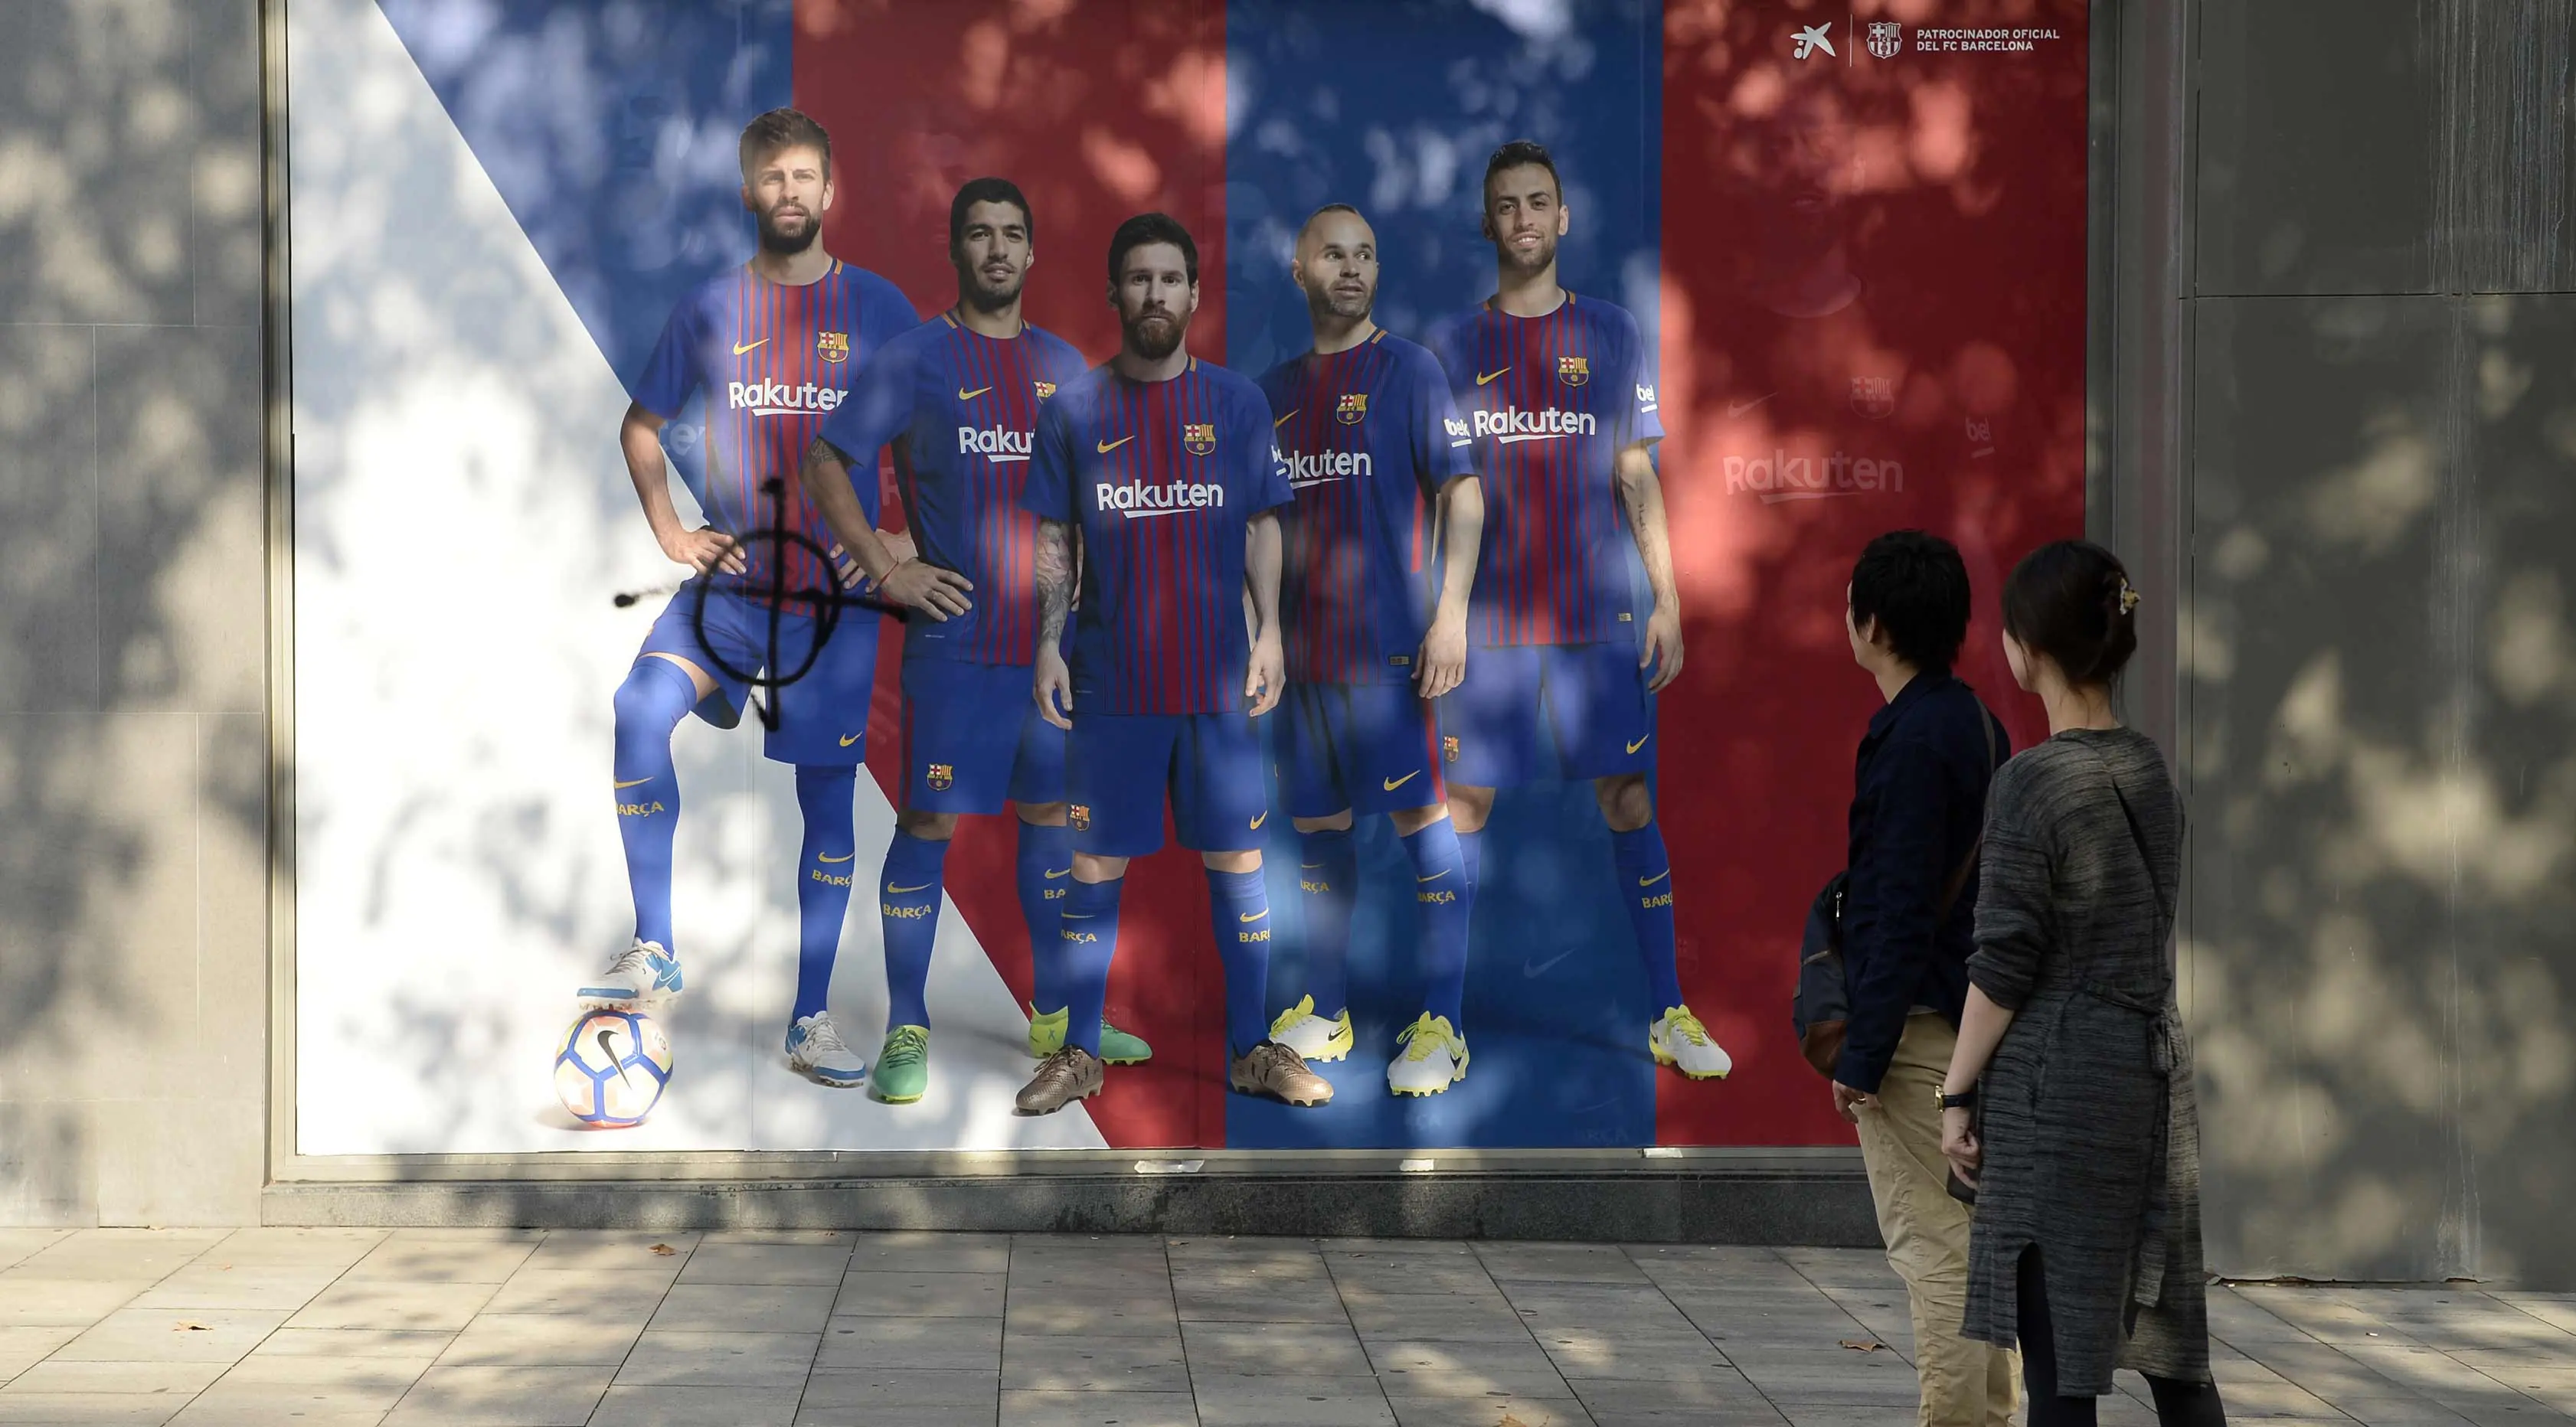 Fans melihat poster pemain Barcelona, Gerard Pique yang dirusak di sebuah toko yang ditutup sebagai bagian dari pemogokan oleh serikat pekerja Catalonia di luar stadion Camp Nou, Barcelona (3/10). (AFP Photo/Josep Lago)